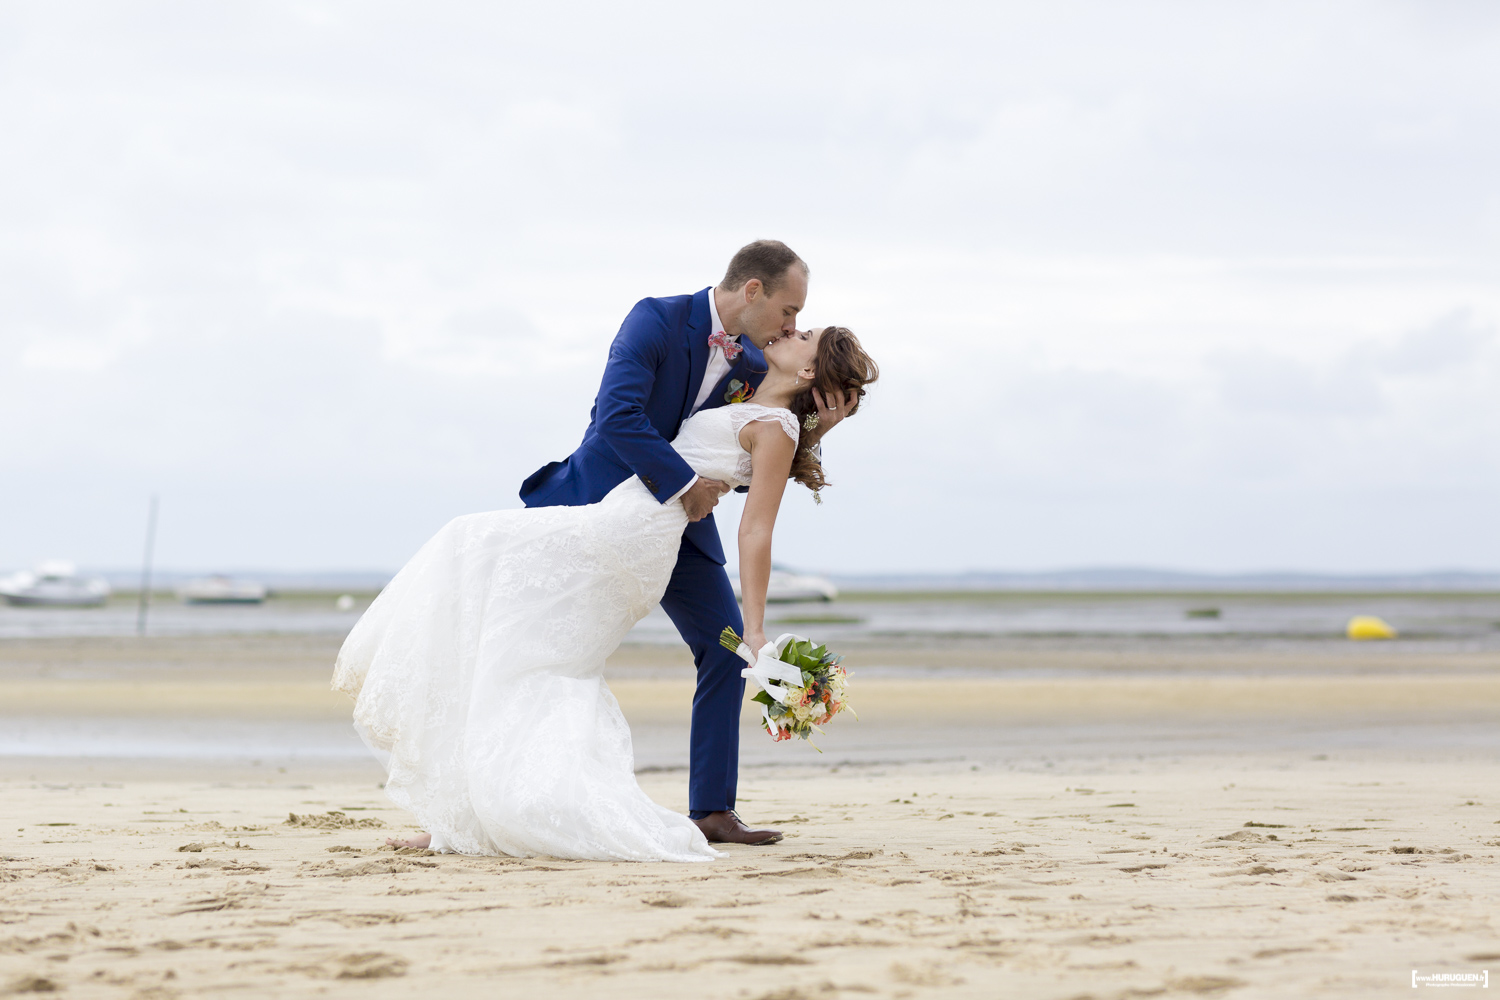 sebastien-huruguen-photographe-mariage-laique-sur-la-plage-lanton-gironde-aquitaine-bassin-arcachon-couple-baiser-renverse